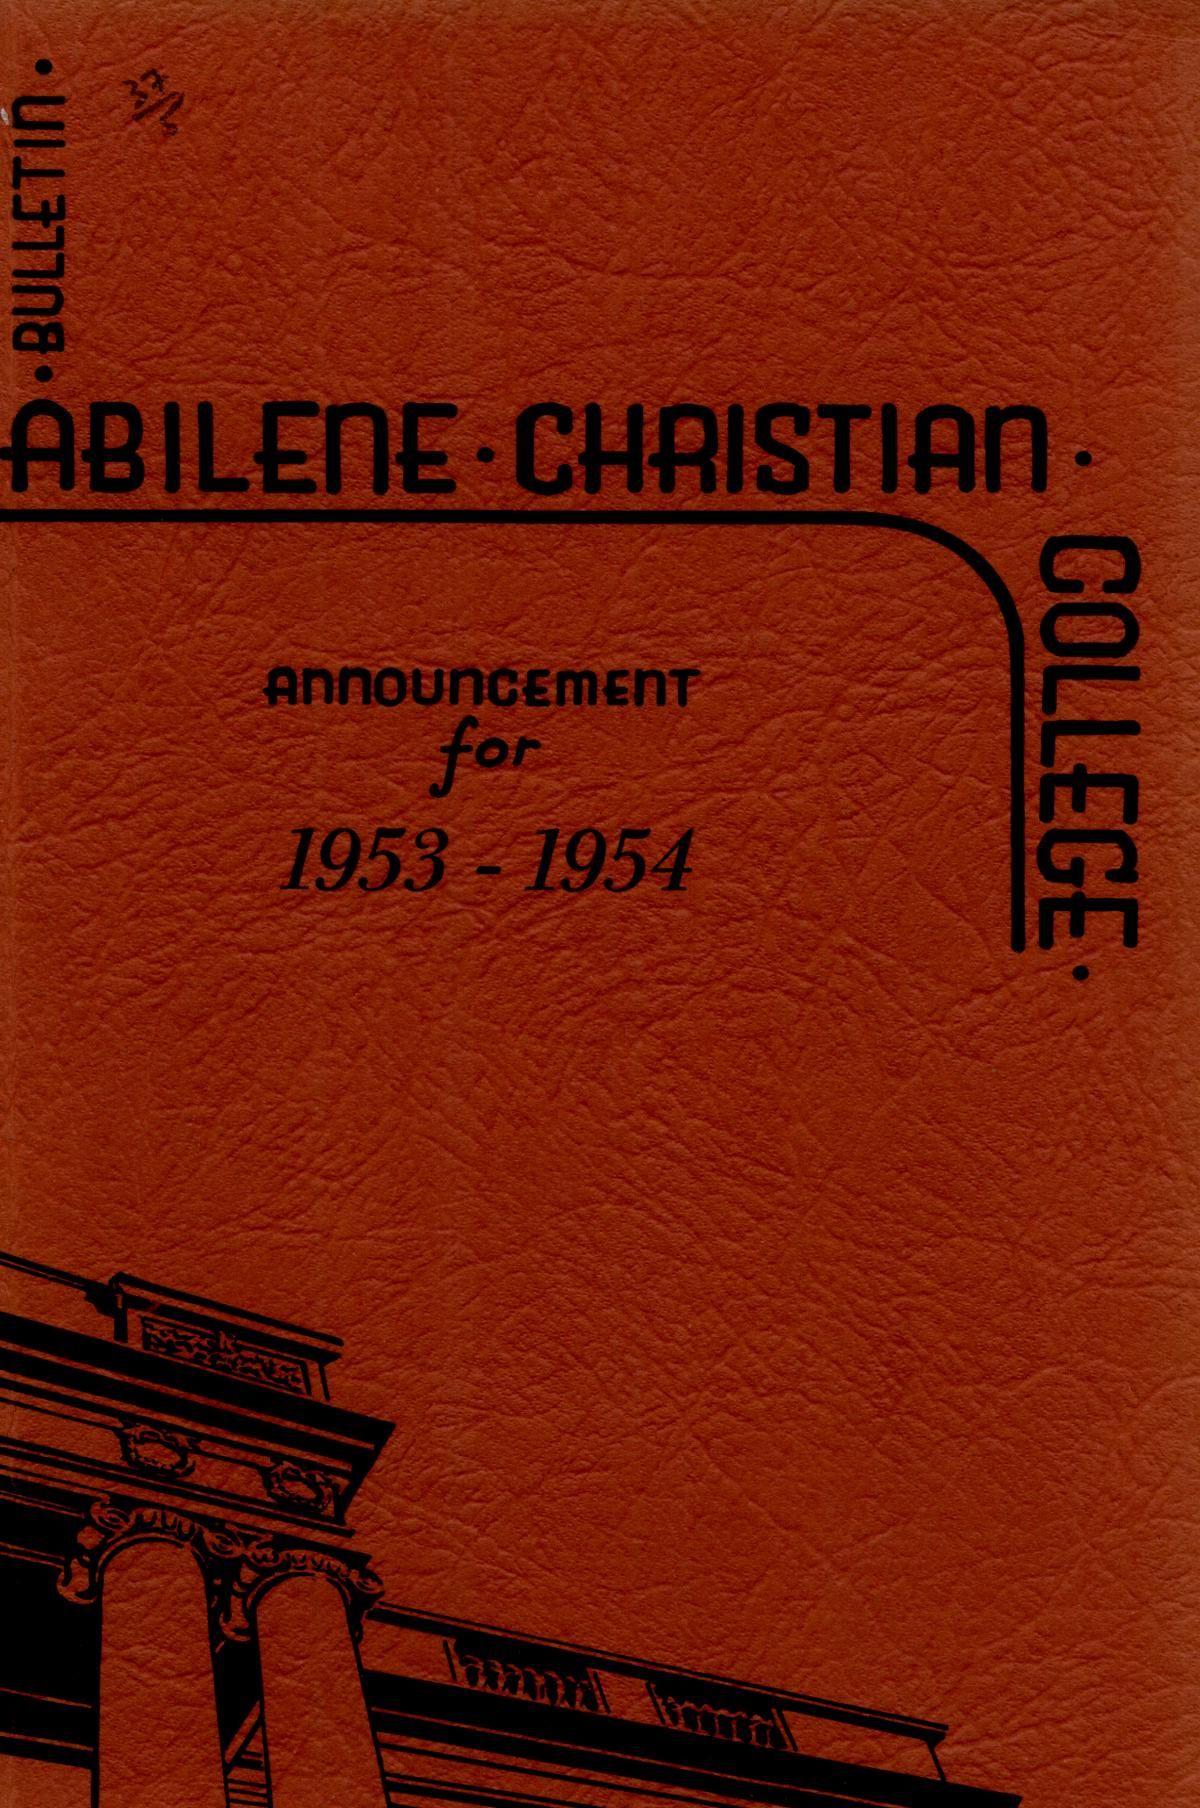 Catalog of Abilene Christian College, 1953-1954
                                                
                                                    Front Cover
                                                